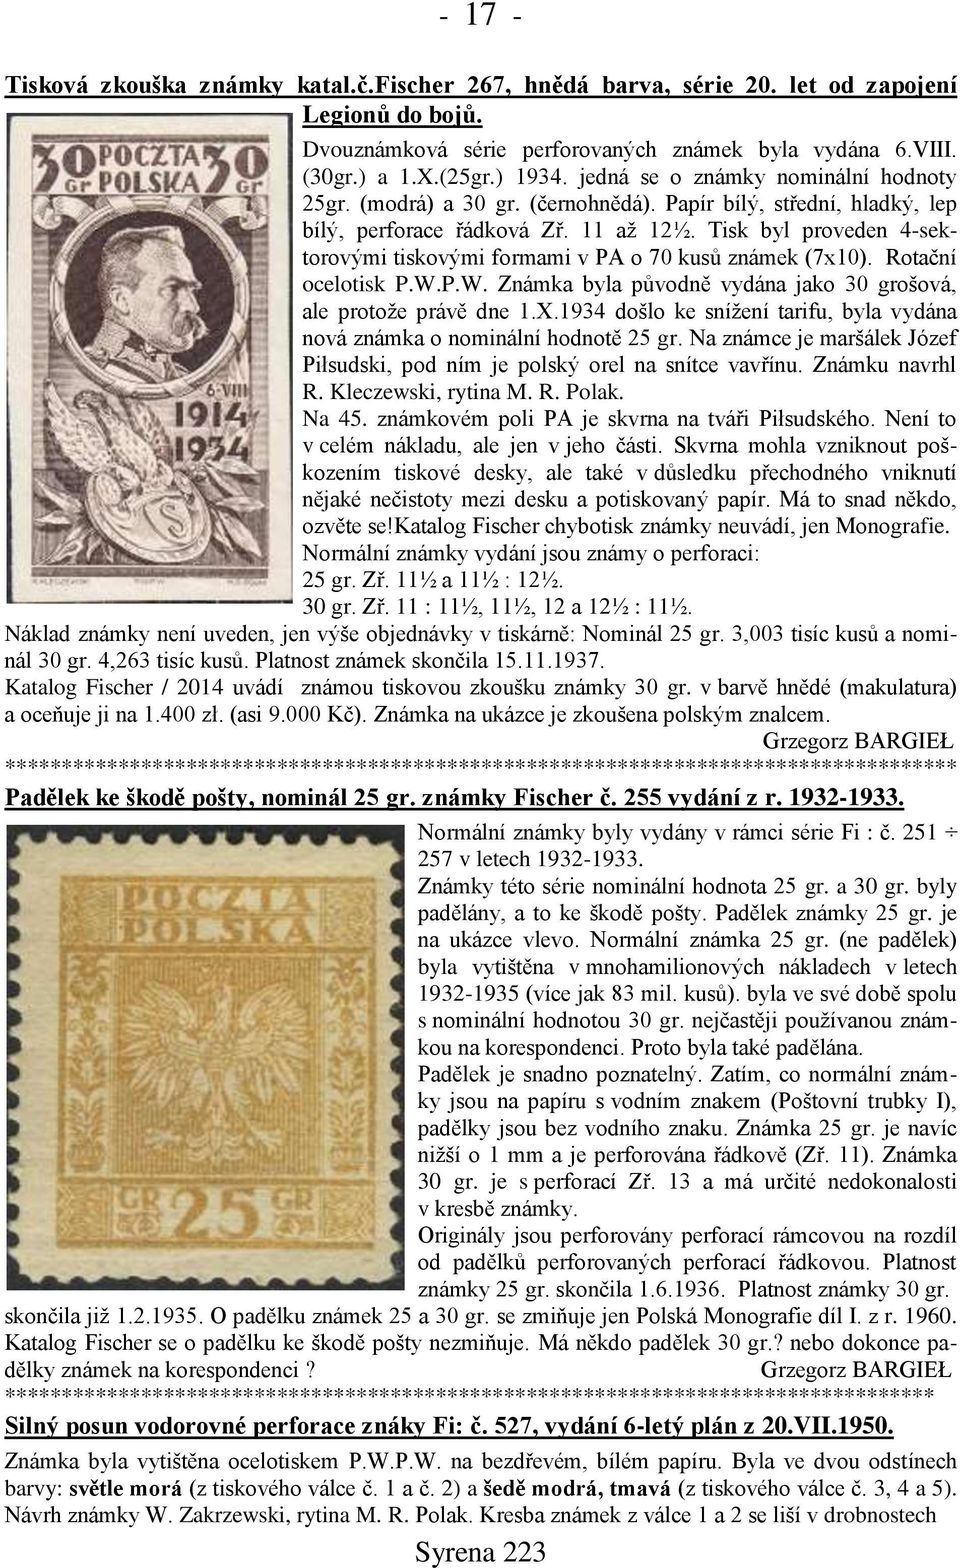 Tisk byl proveden 4-sektorovými tiskovými formami v PA o 70 kusů známek (7x10). Rotační ocelotisk P.W.P.W. Známka byla původně vydána jako 30 grošová, ale protože právě dne 1.X.